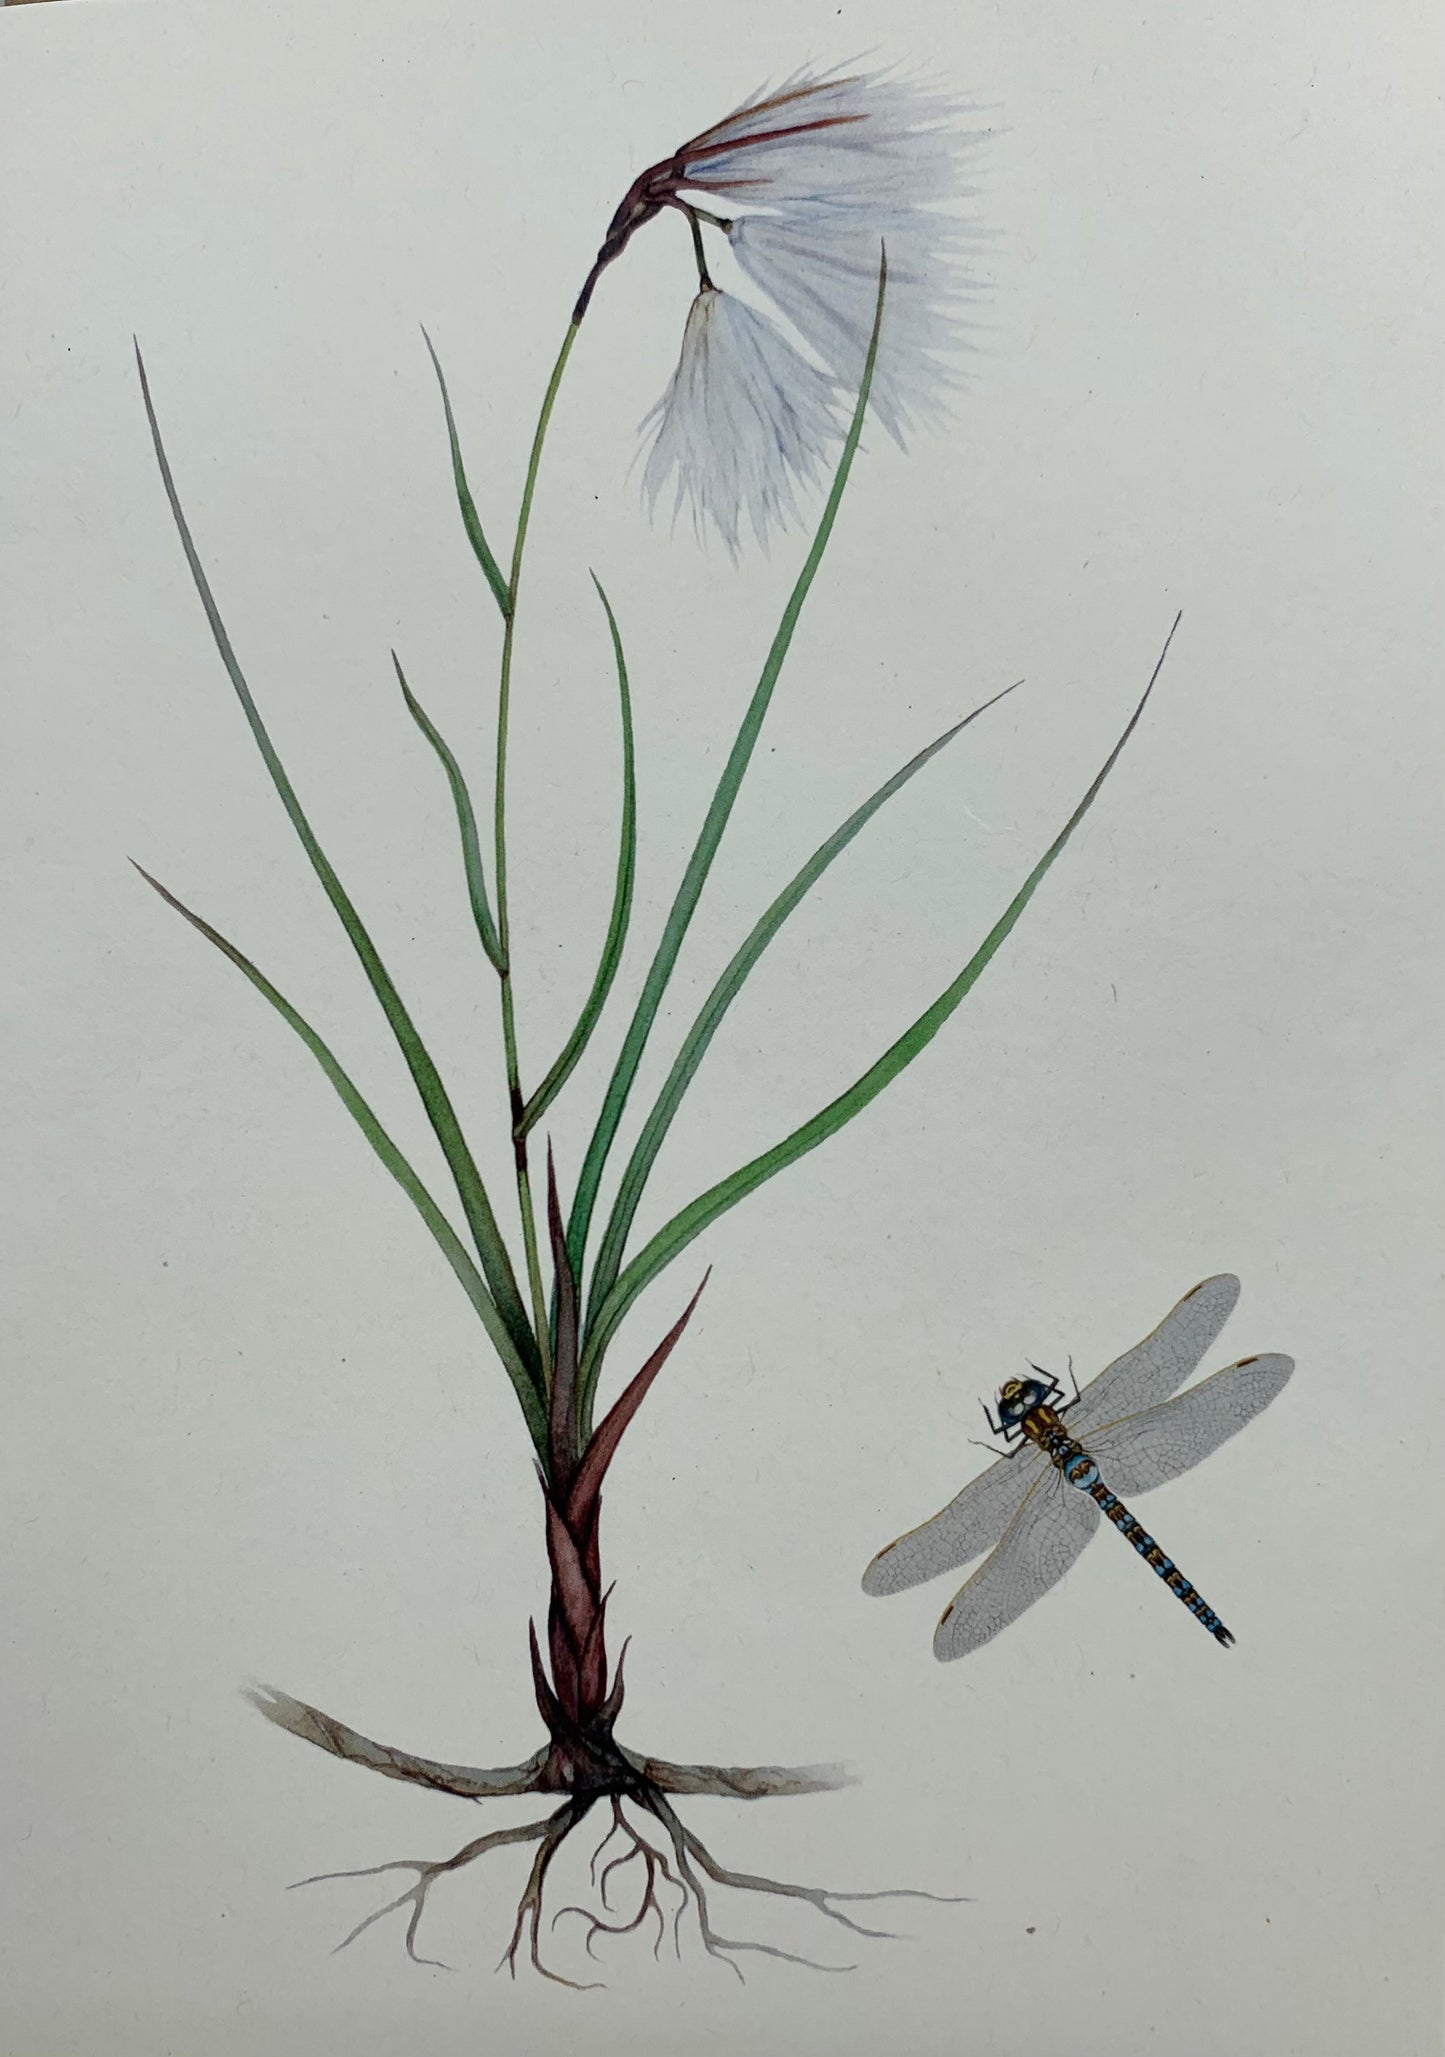 Bog cotton &Dragonfly